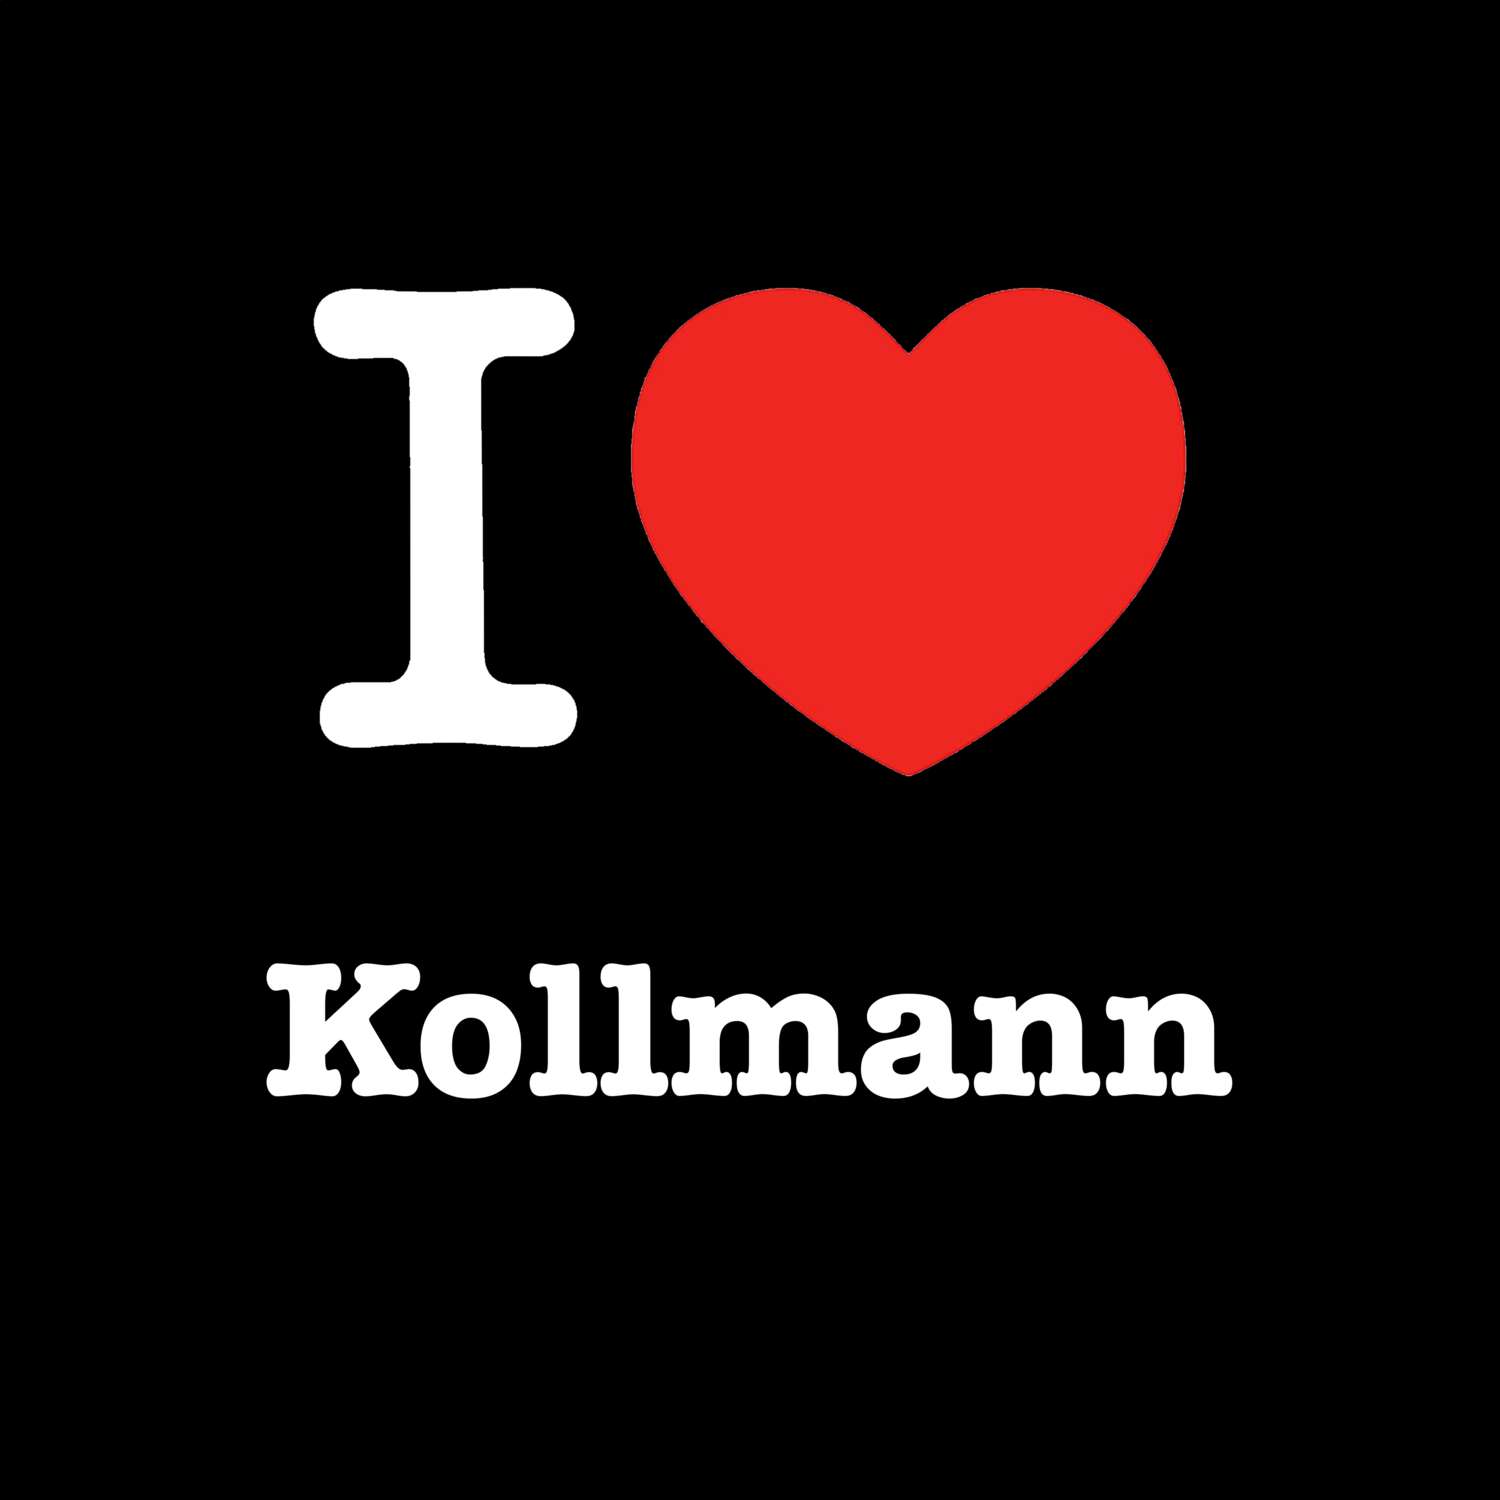 Kollmann T-Shirt »I love«